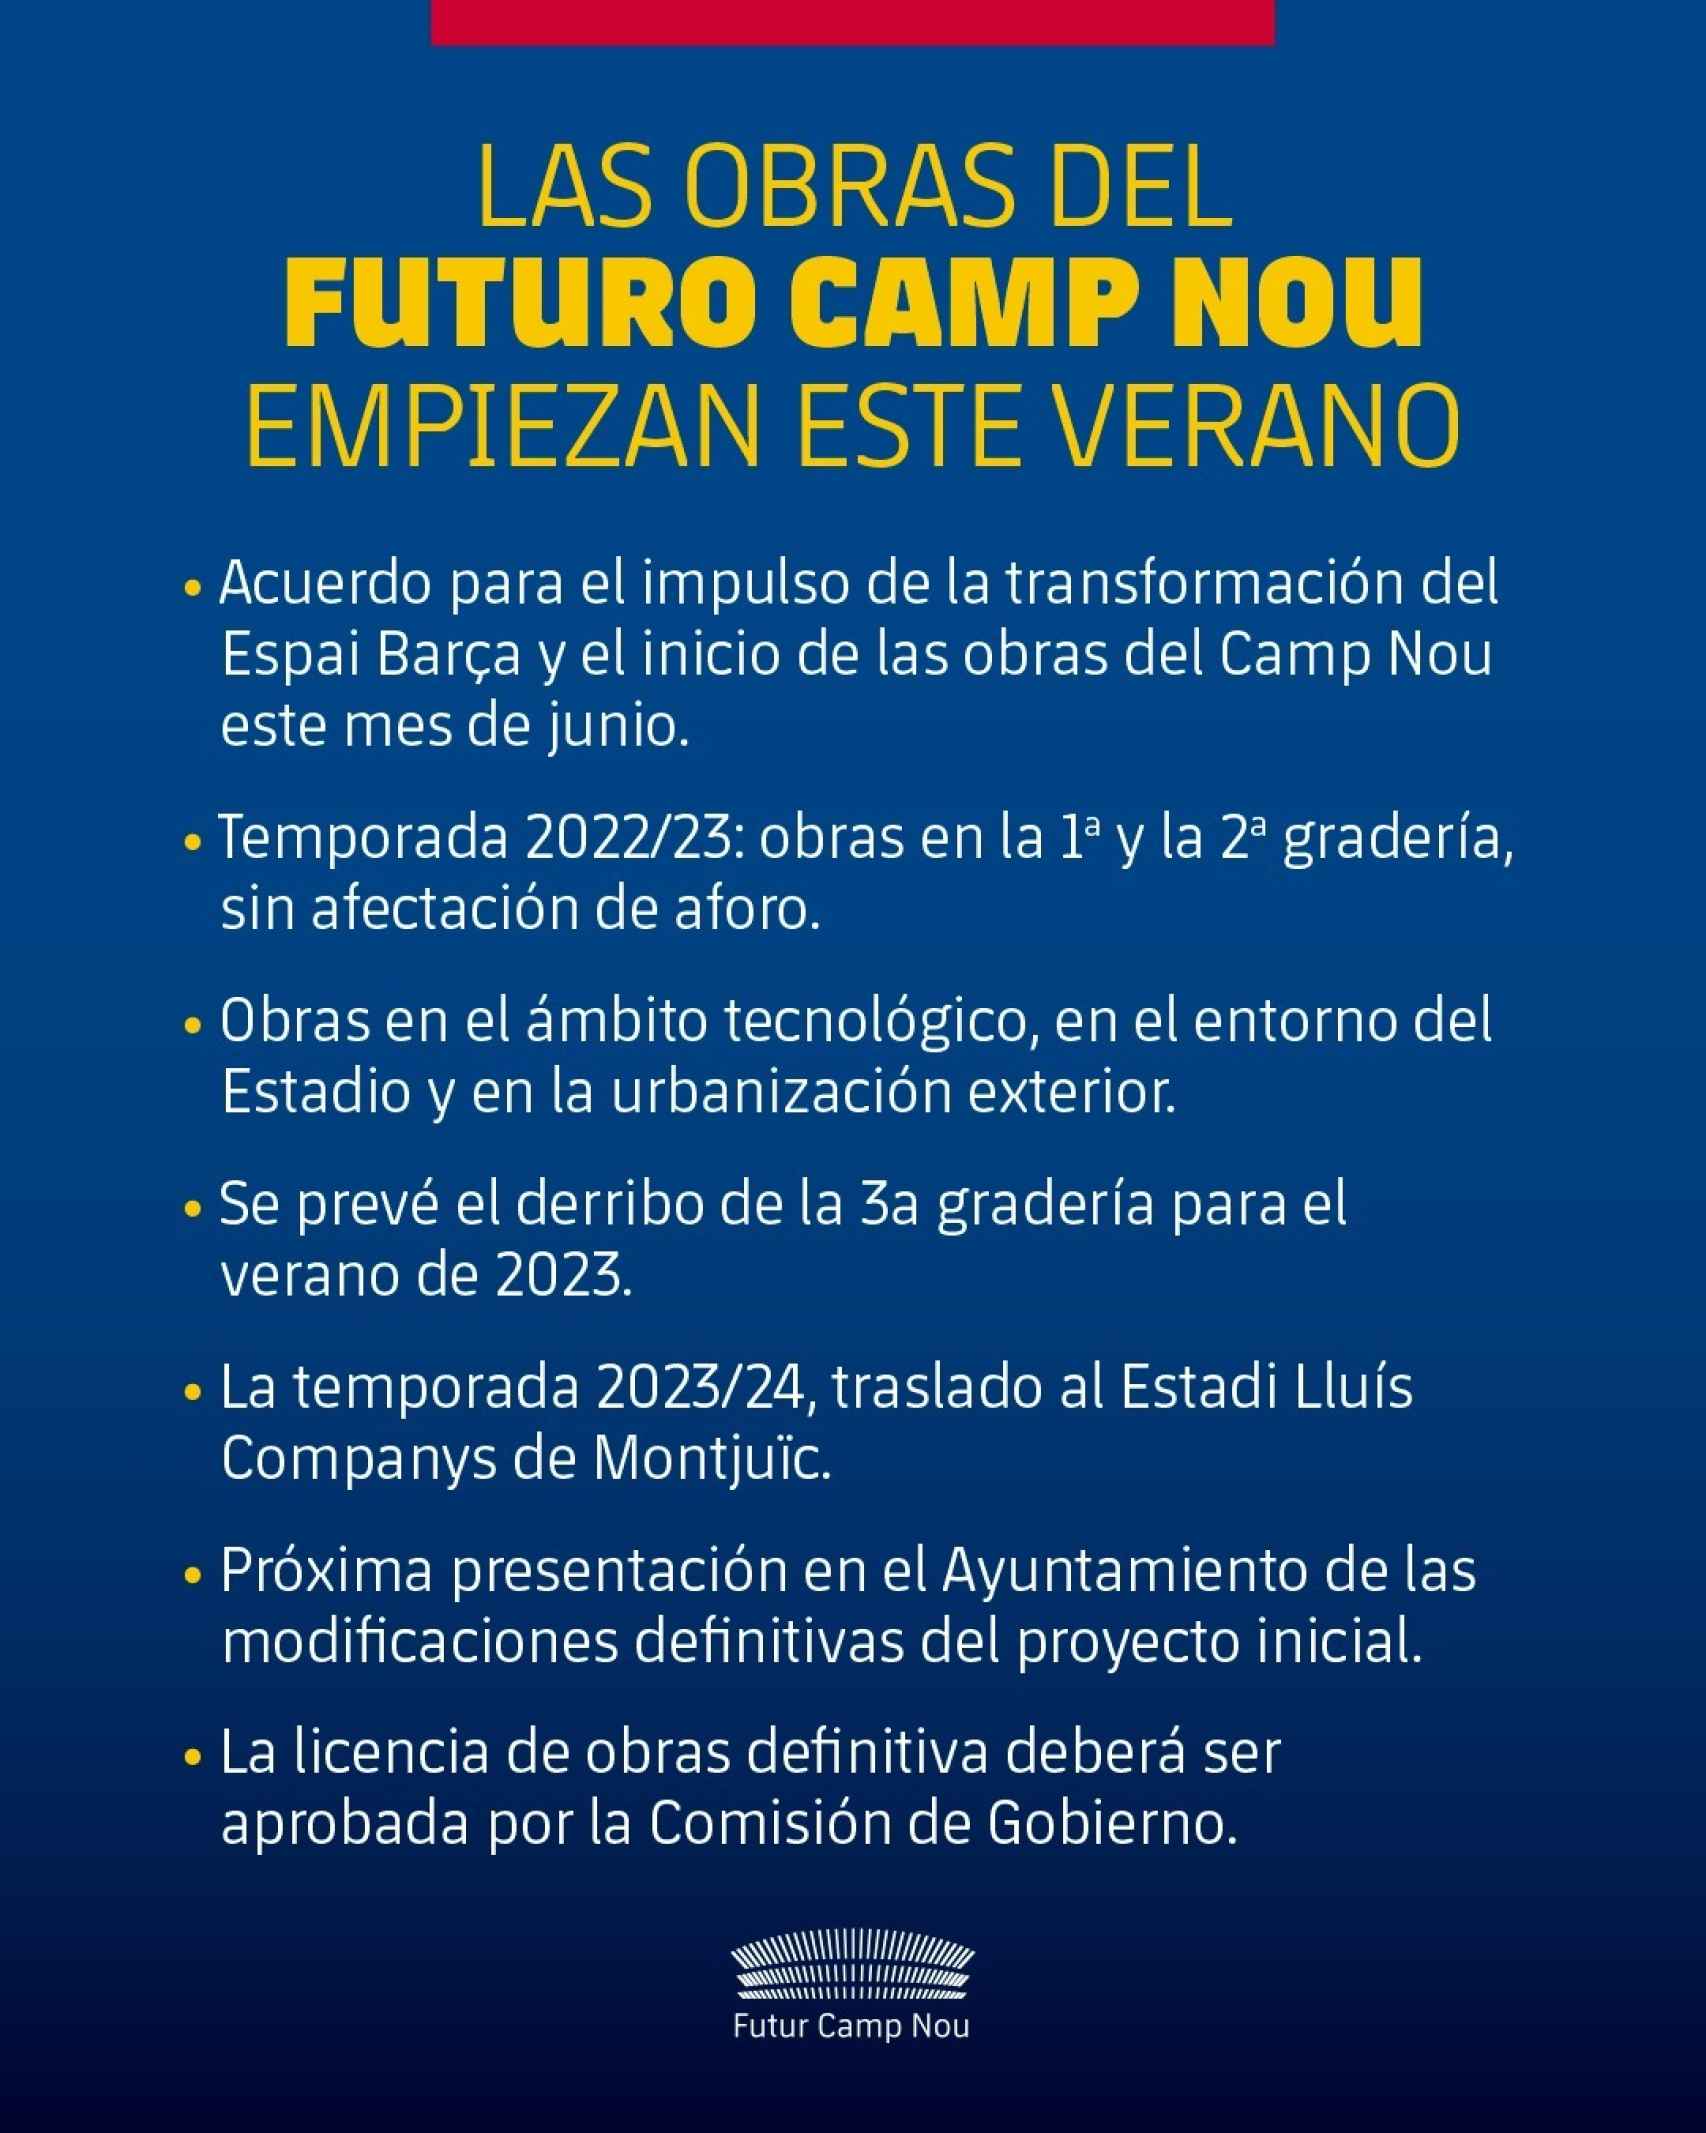 El plan de acción del Futur Camp Nou